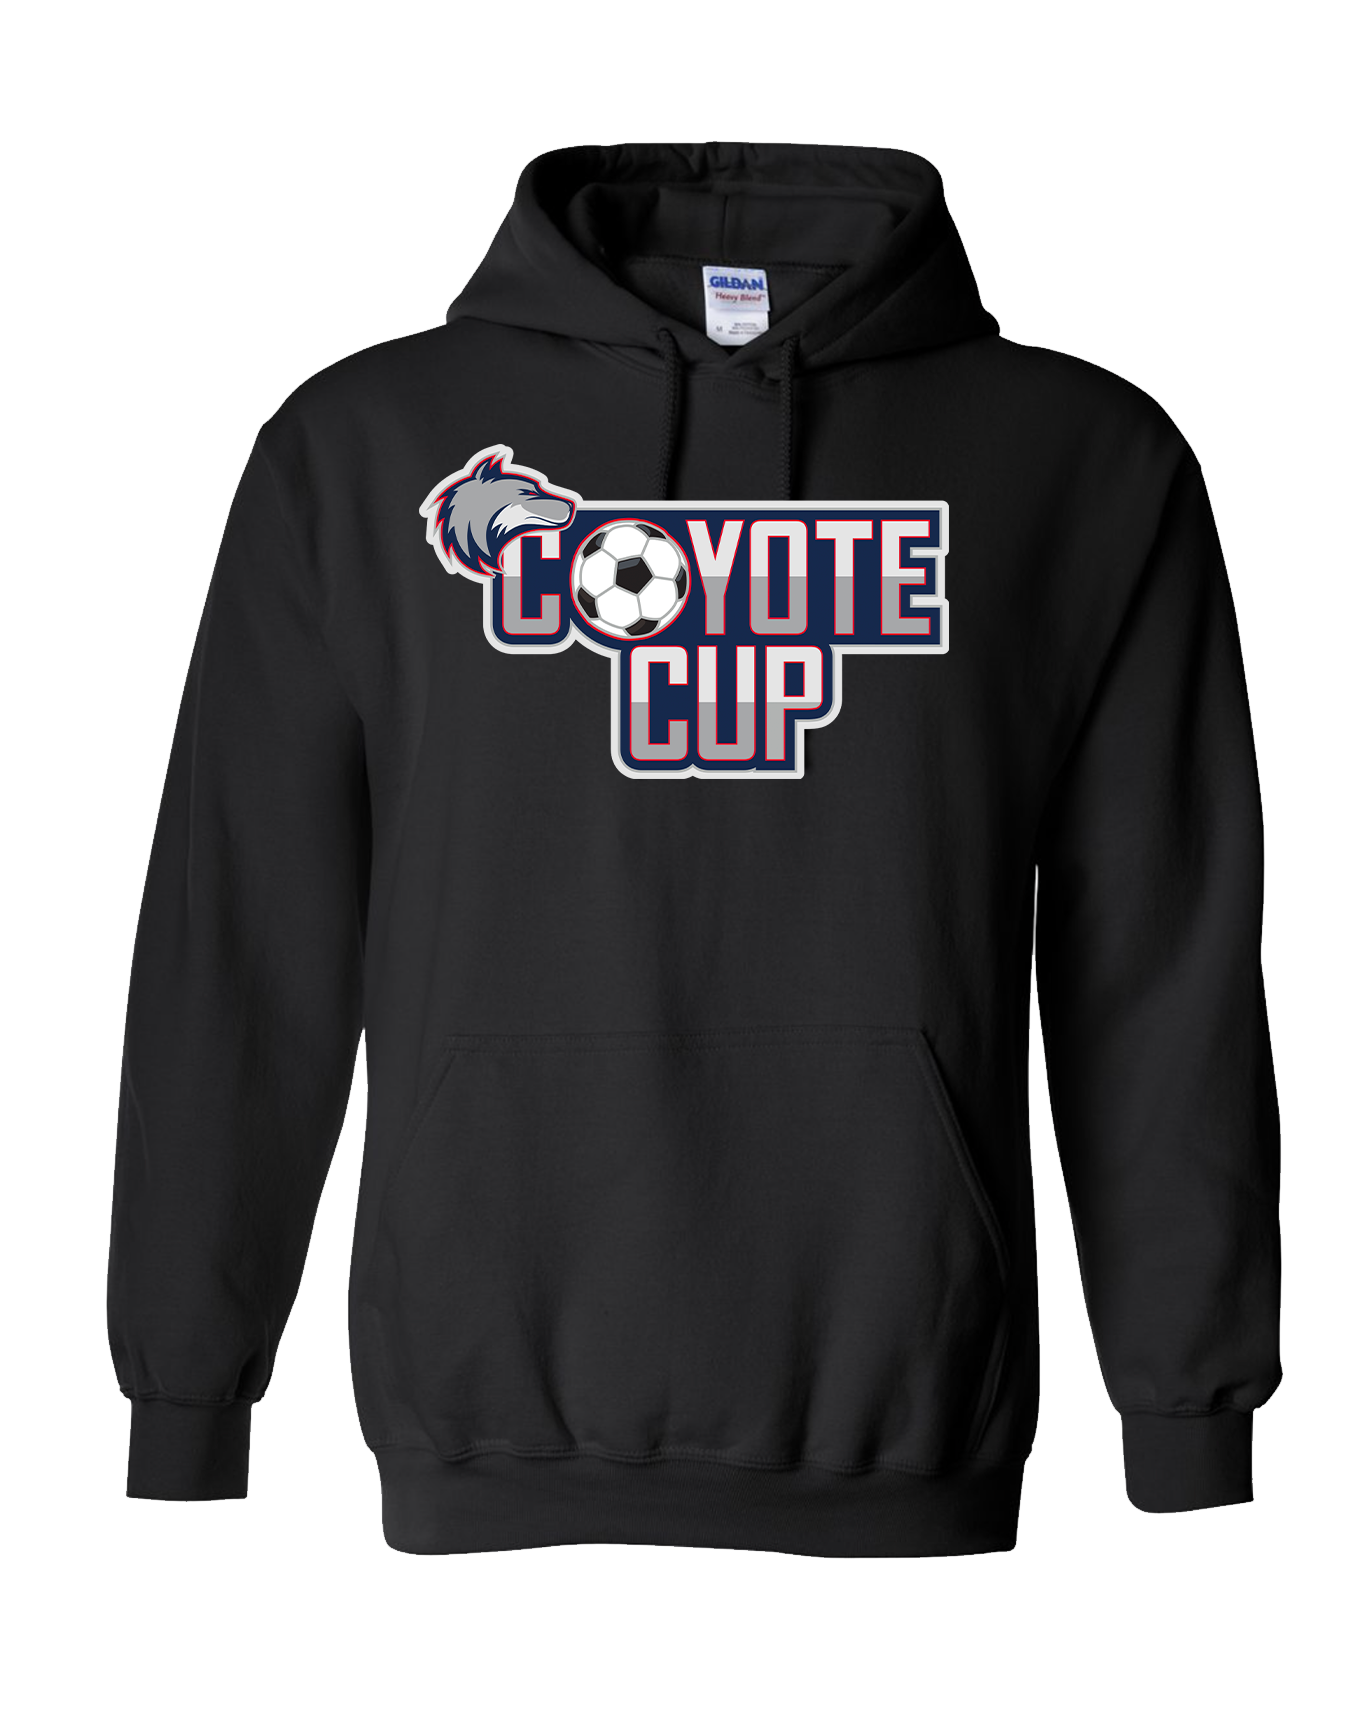 Coyote Cup Black Hoodie